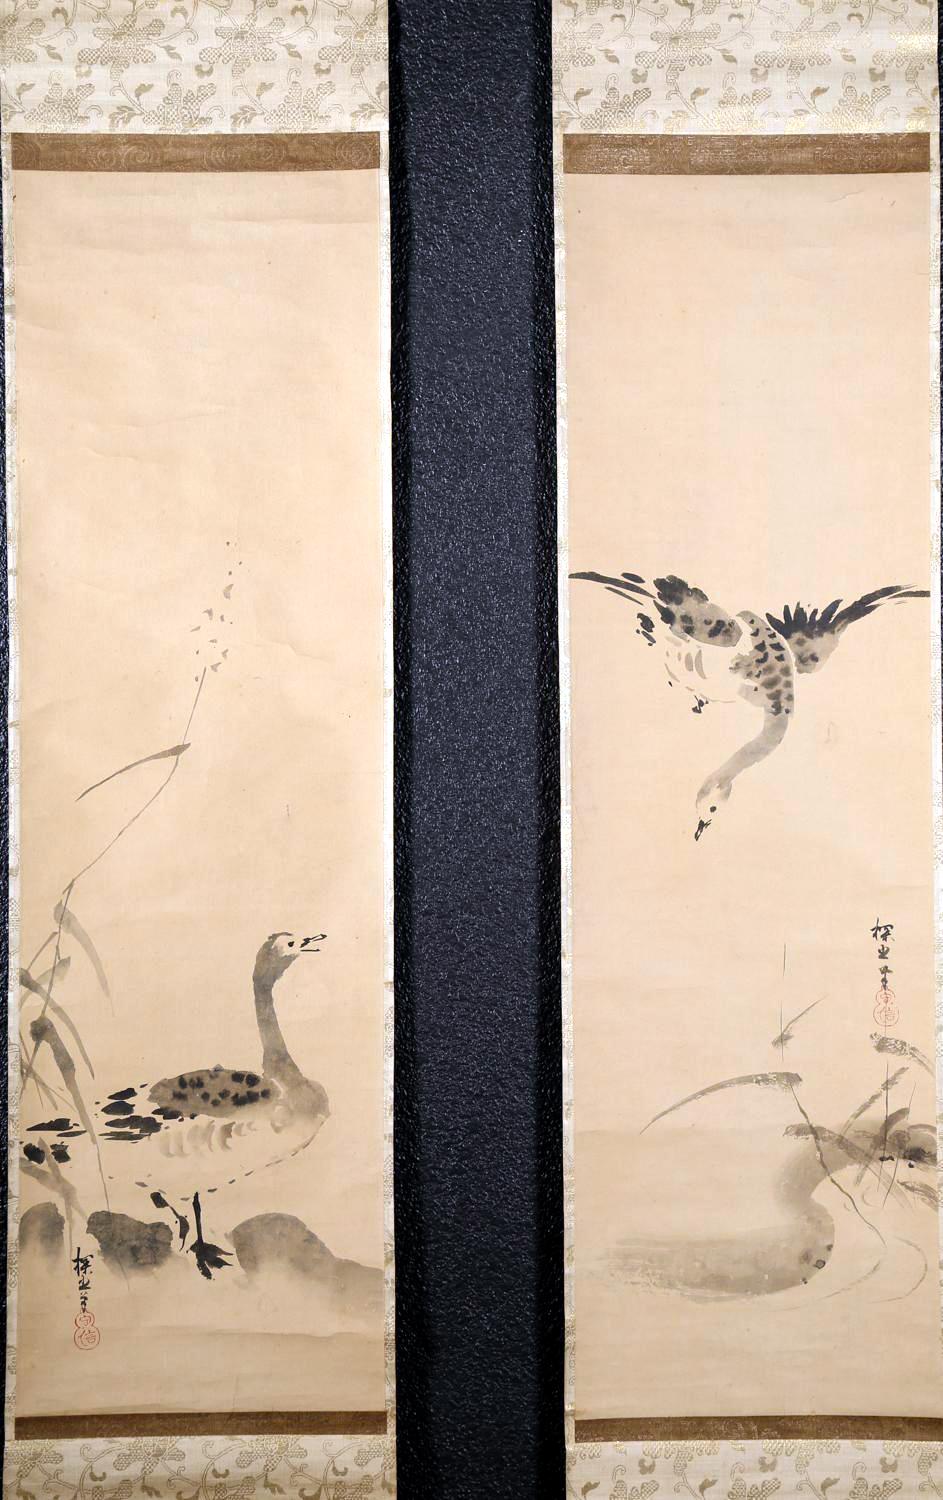 Ein feines Paar von hängenden Schriftrollen, Tinte auf Papier, in grünem Brokat eingefasst, um die Edo-Zeit (17.-18. Jahrhundert). Die Malerei der Kano-Schule zeigt Wildgänse im Schilf am Rande des Wassers, ein beliebtes Motiv, das der chinesischen